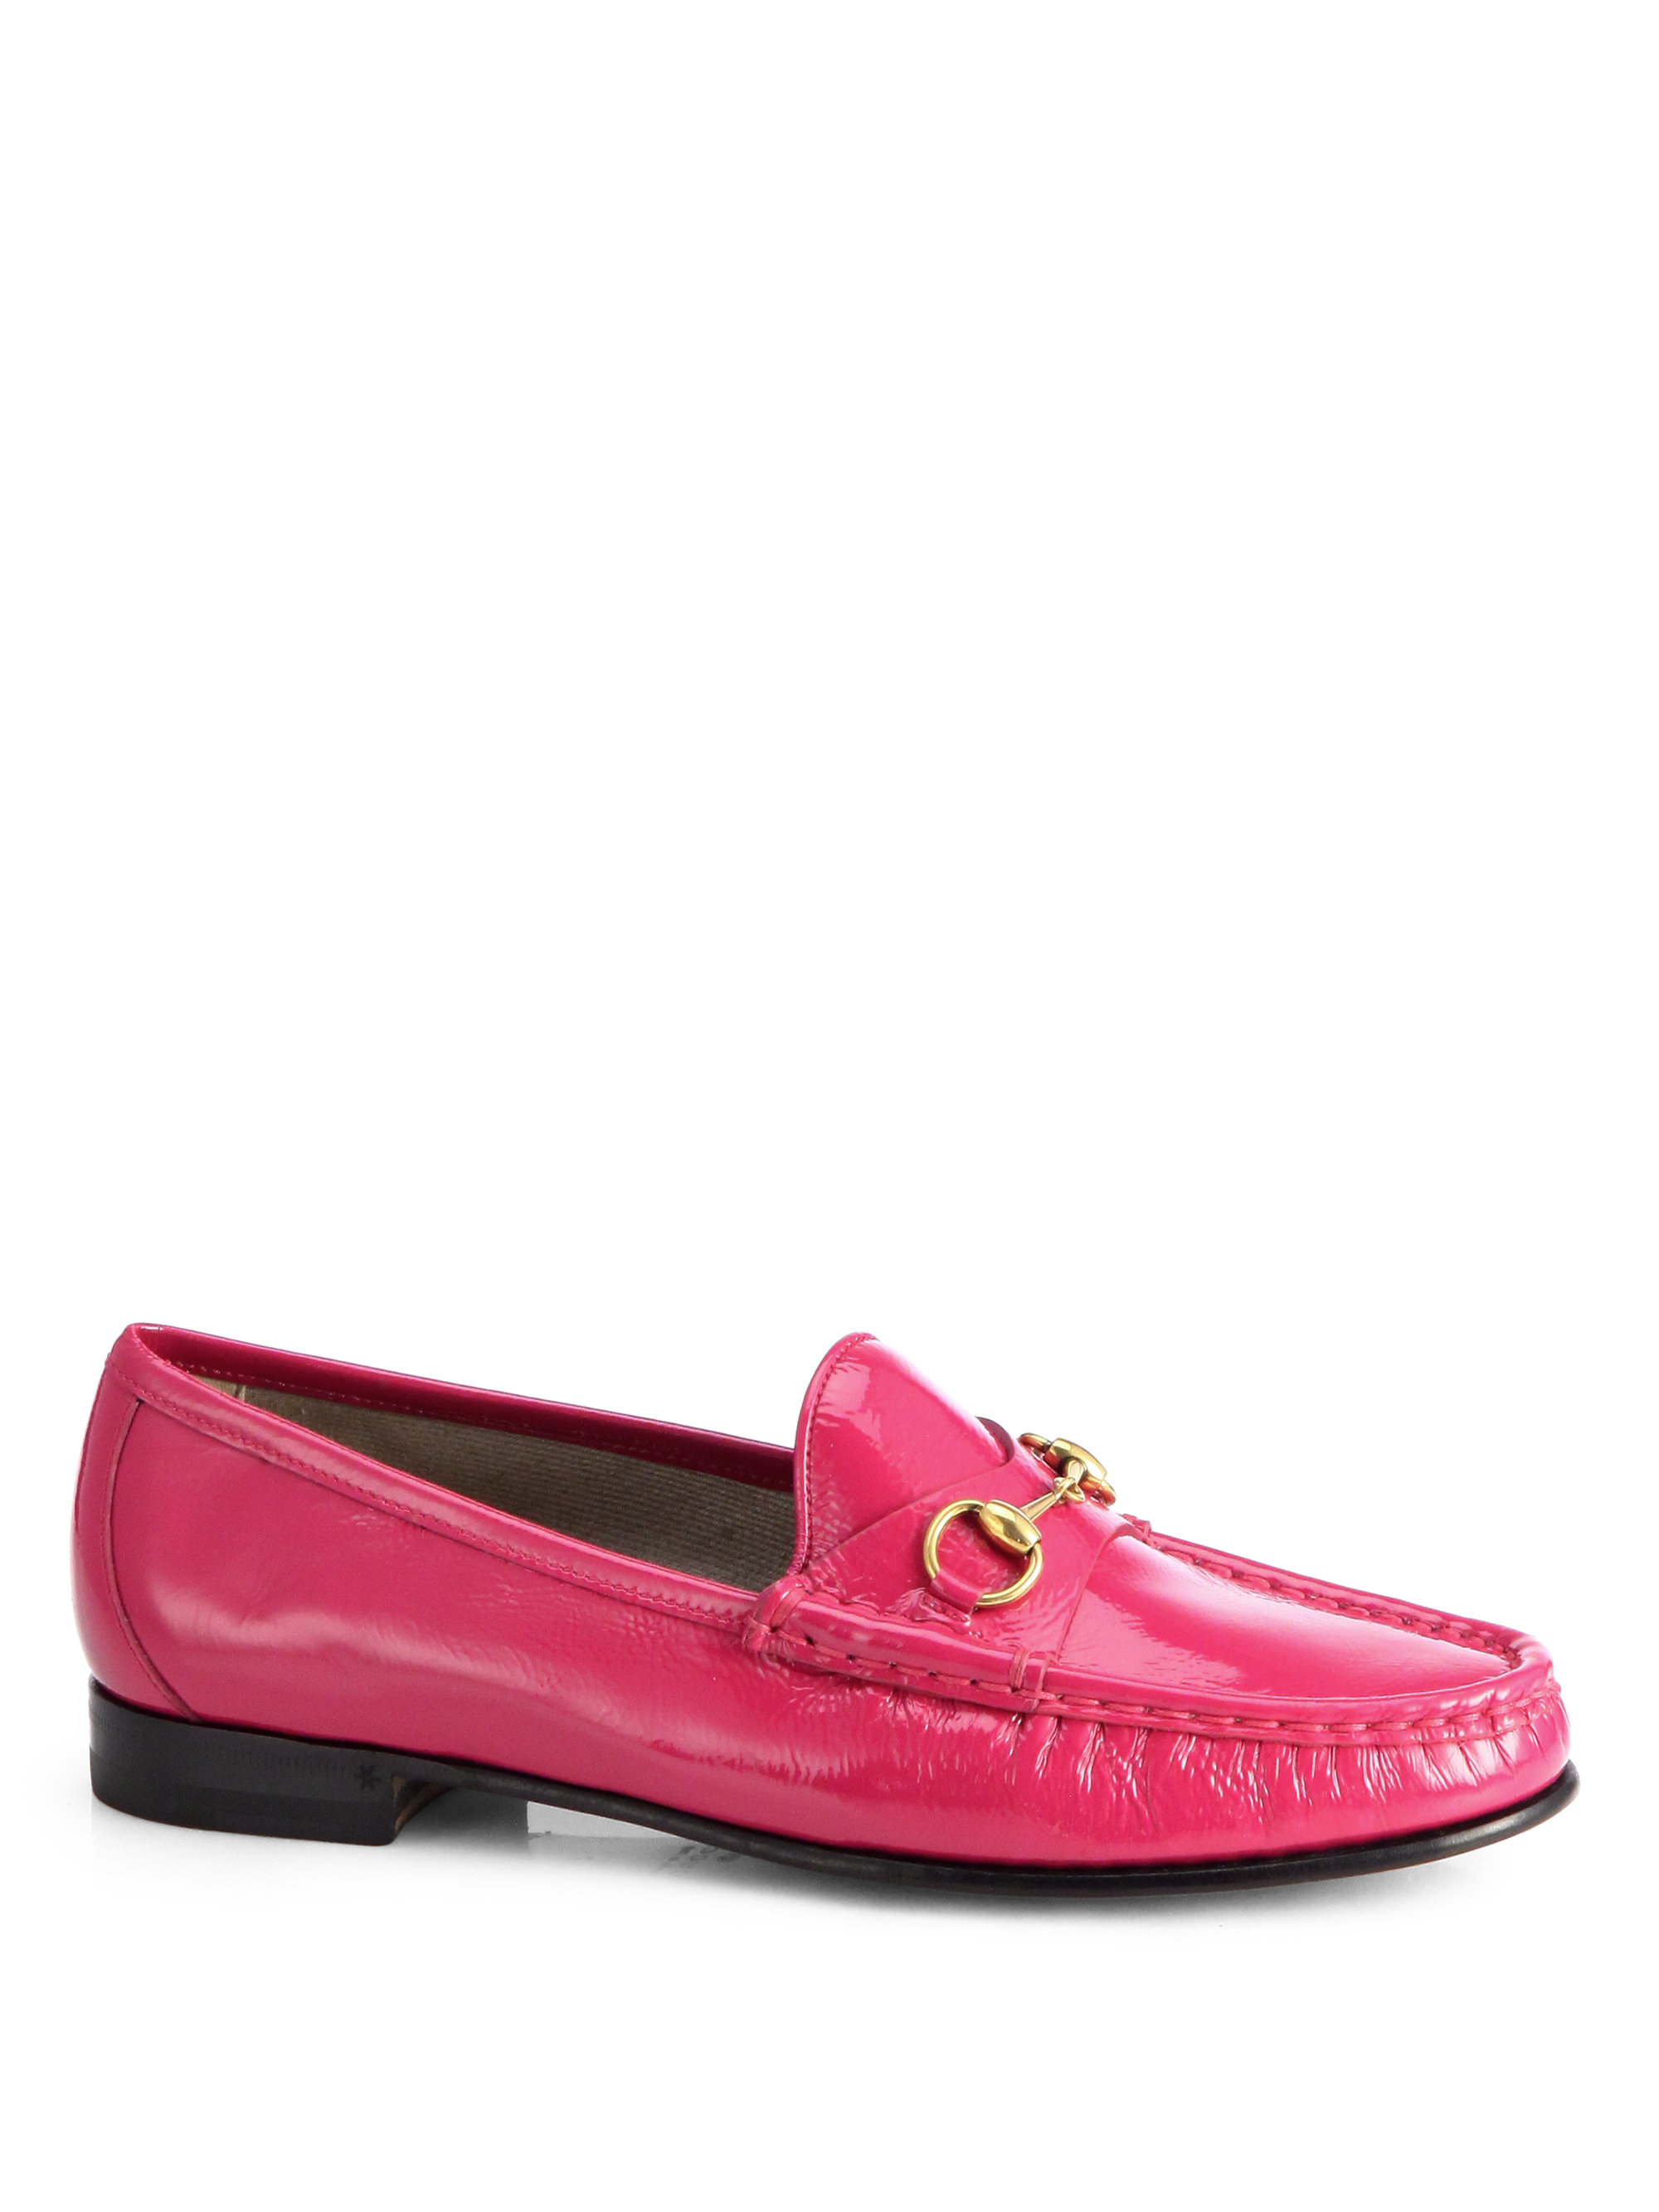 pessimistisk Faret vild mangel Gucci Patent Leather Horsebit Loafers in Pink | Lyst